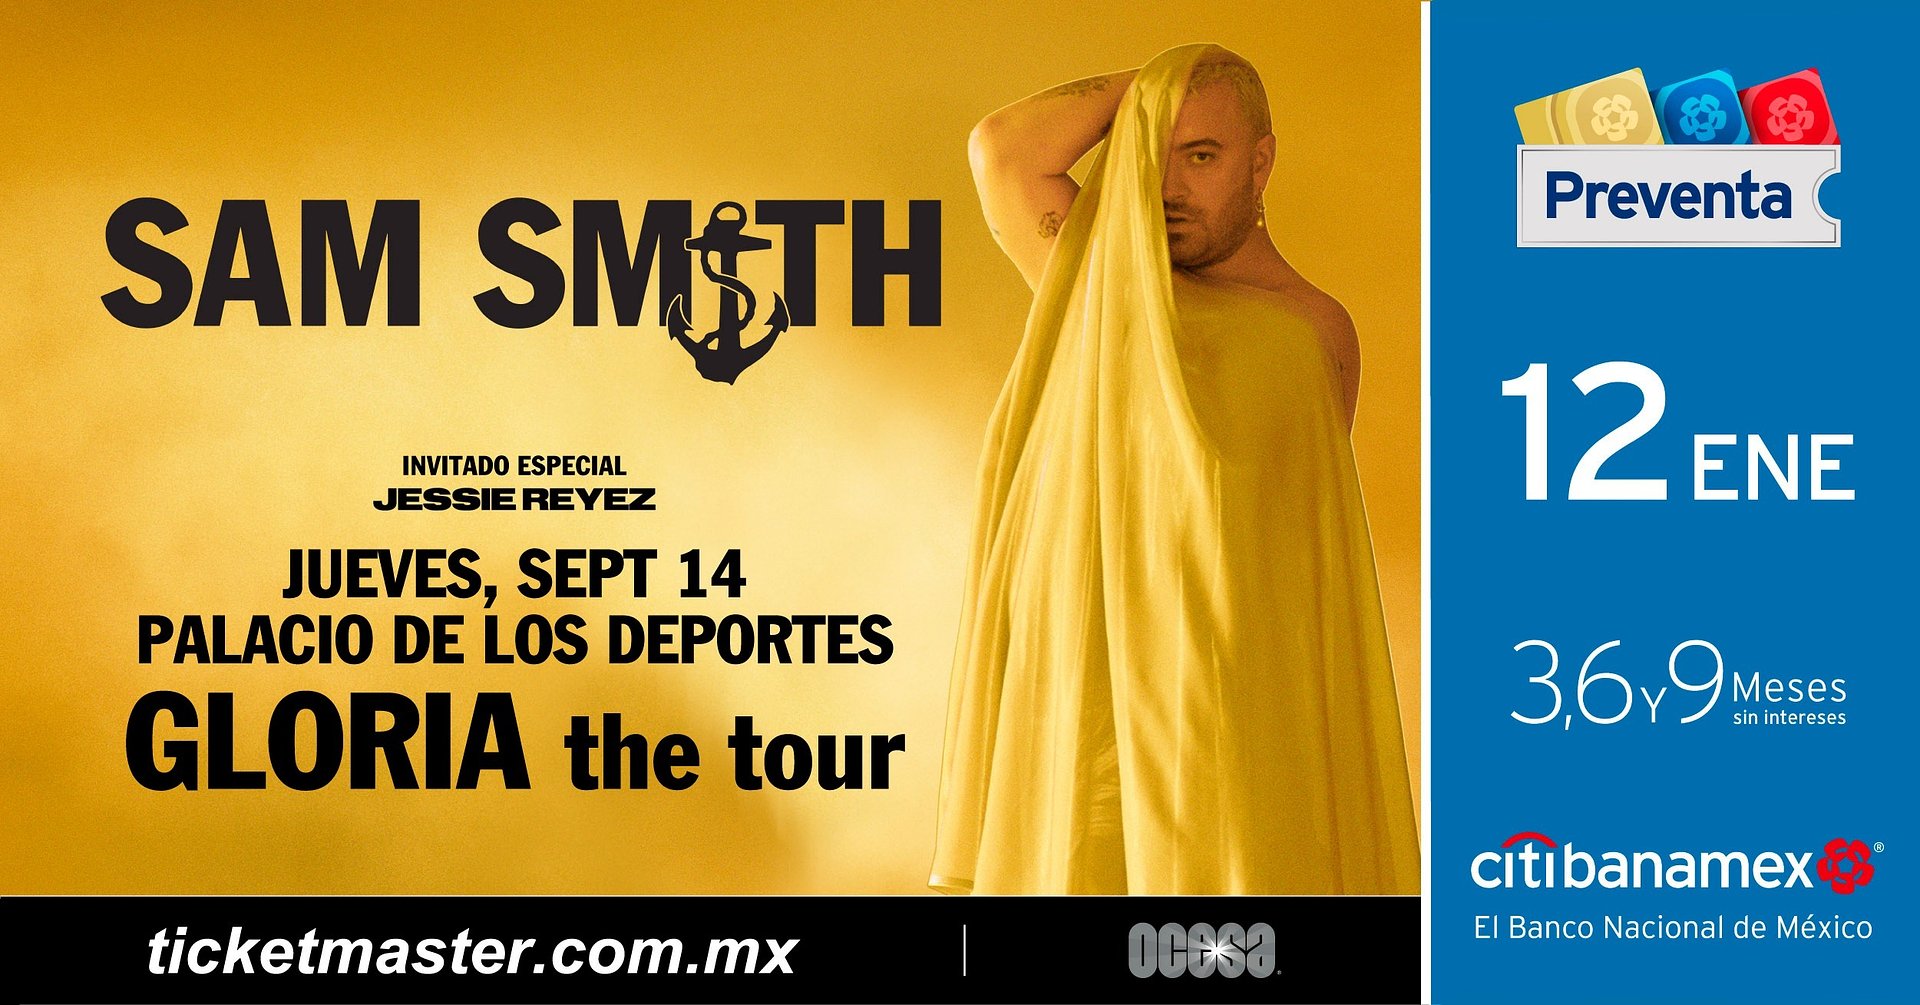 SAM SMITH ANUNCIA GLORIA THE TOUR EN MÉXICO